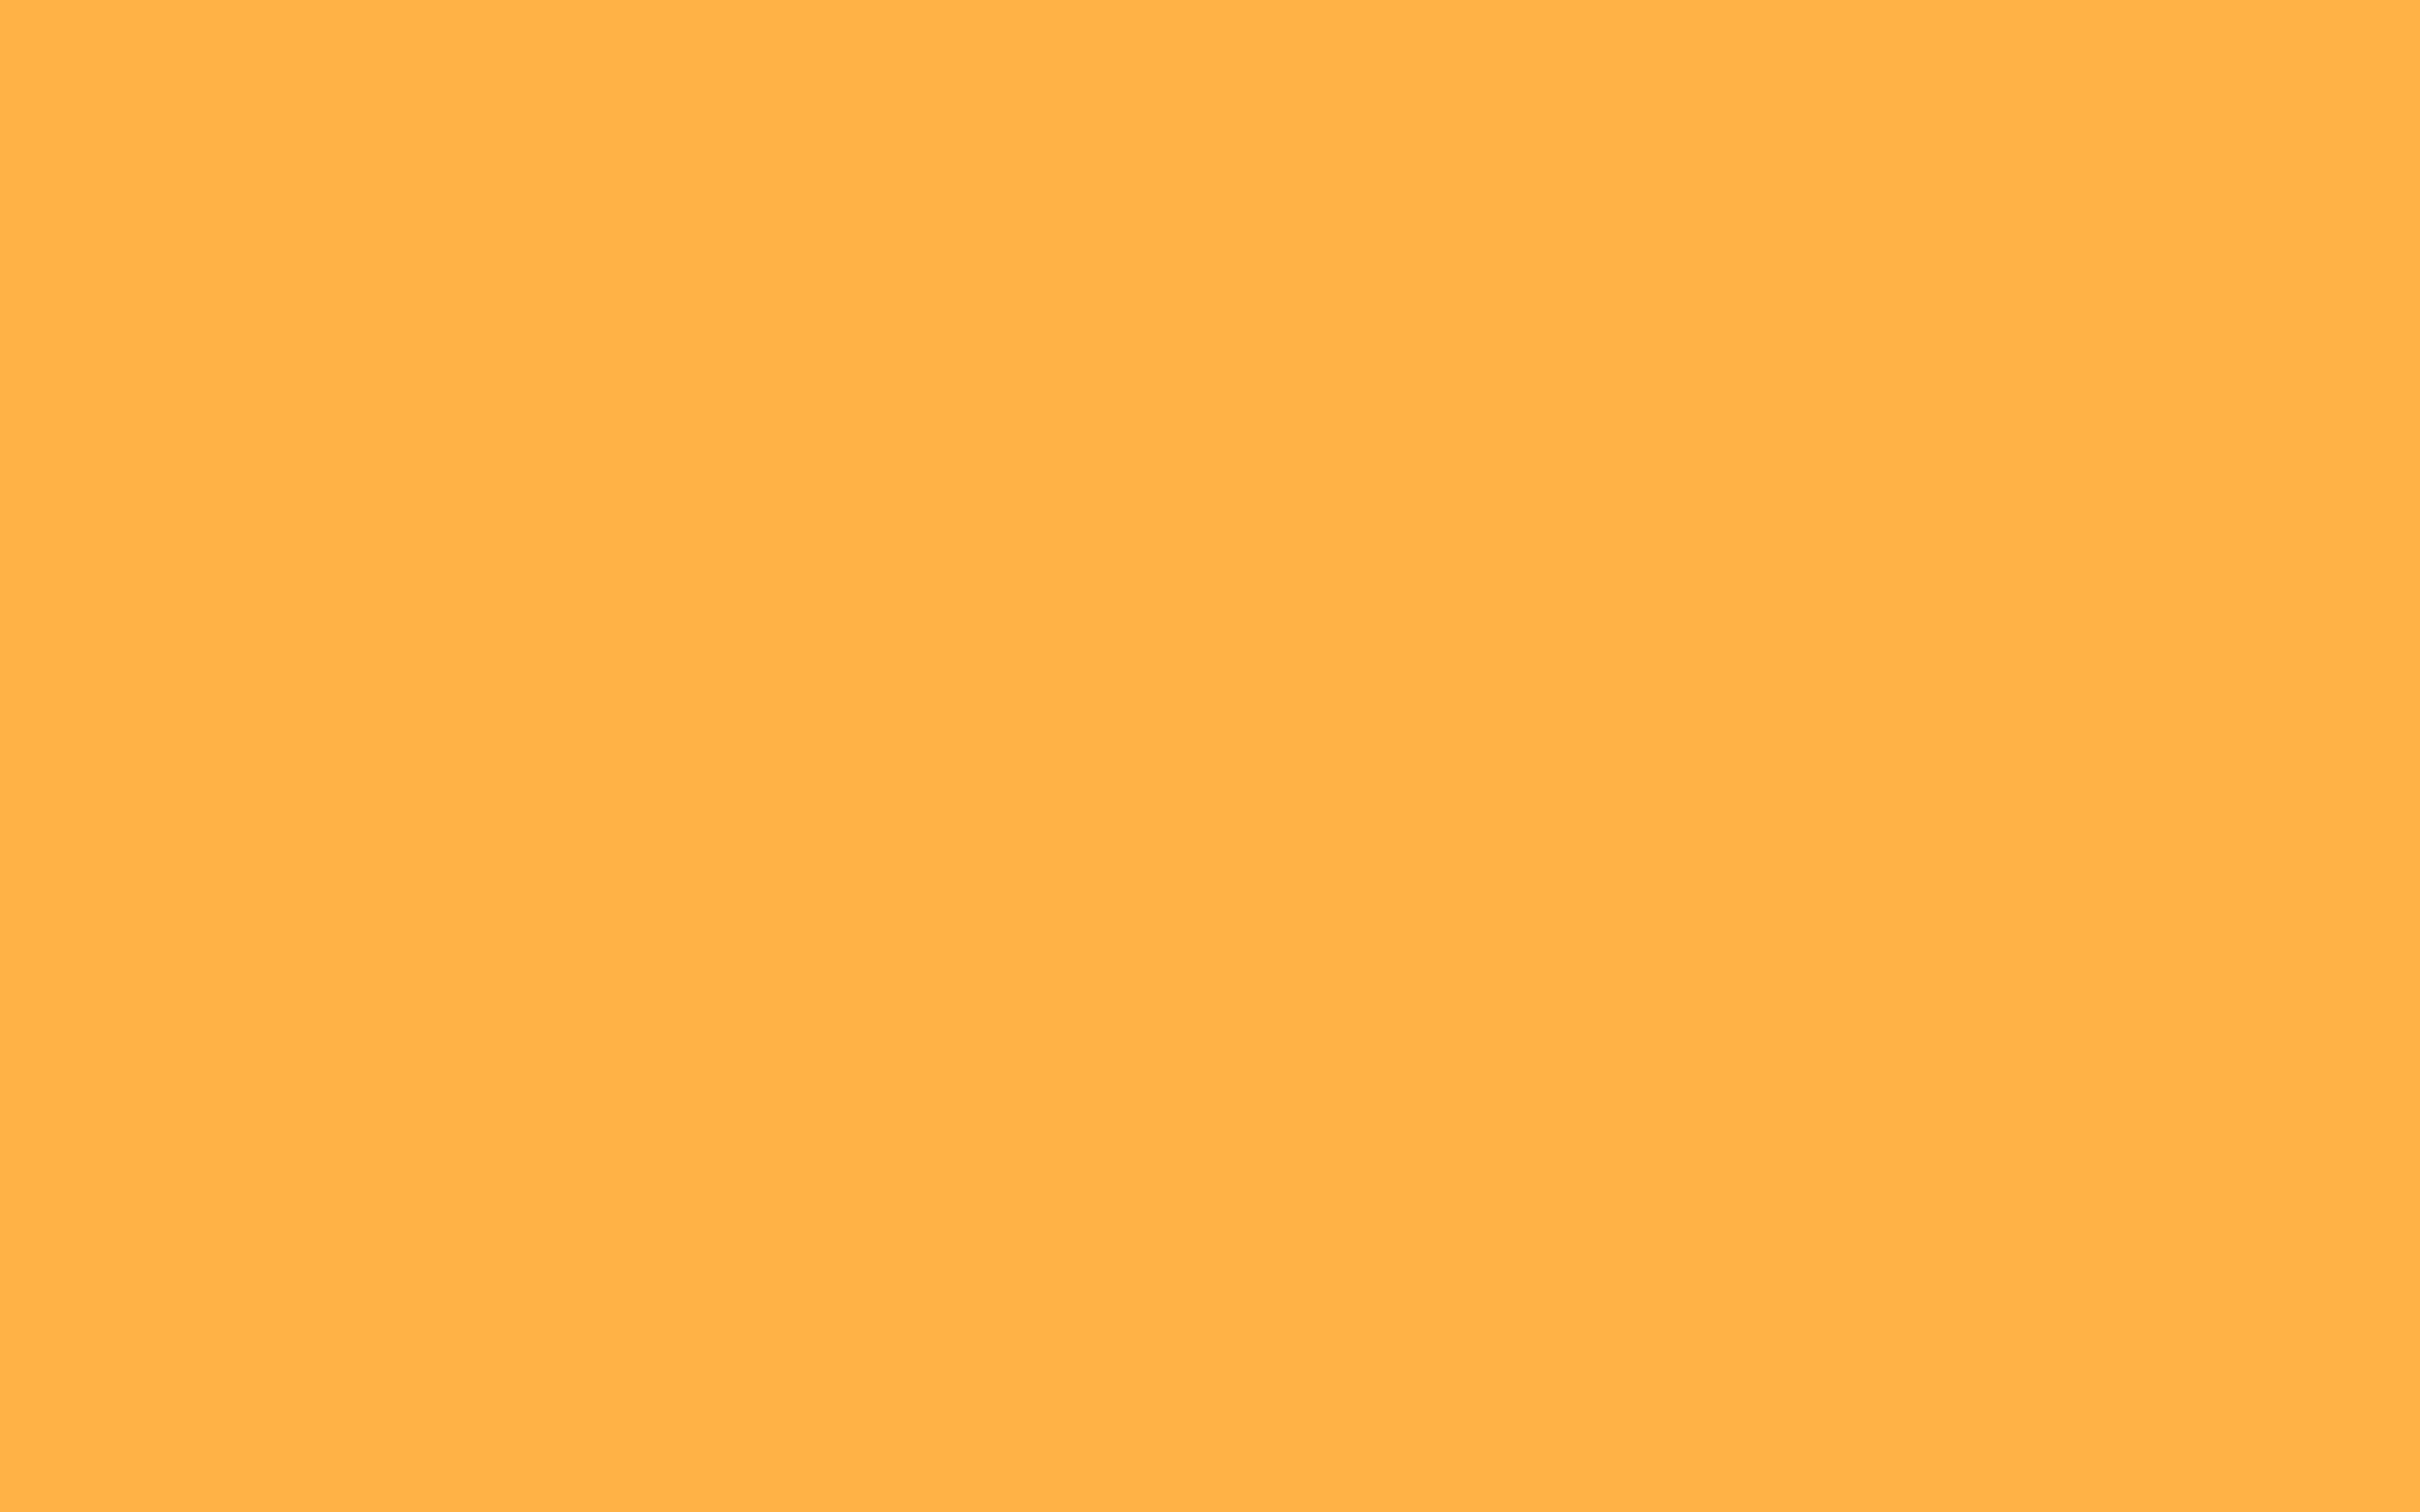 Hình nền màu cam nhạt: Với những hình nền màu cam nhạt, màn hình của bạn sẽ trở nên tươi mới và đầy sức sống. Những sắc thái nhẹ nhàng và dịu mắt cùng với thiết kế độc đáo, chắc chắn sẽ làm bạn cảm thấy thư thái hơn.